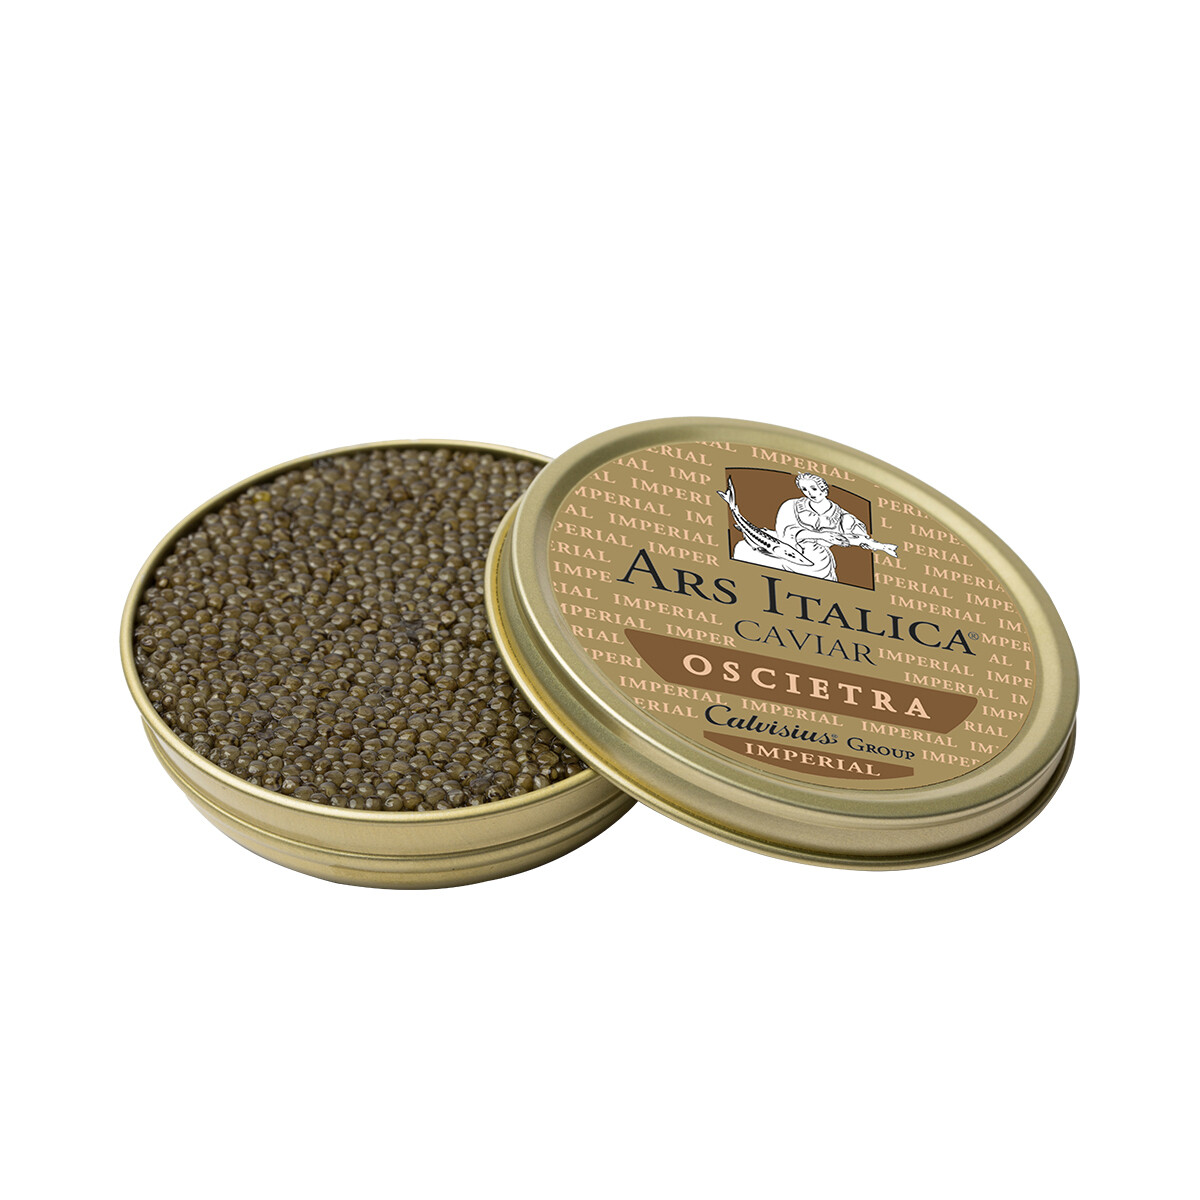 Calvisius Ars Italica Oscietra Imperial Caviar 50g